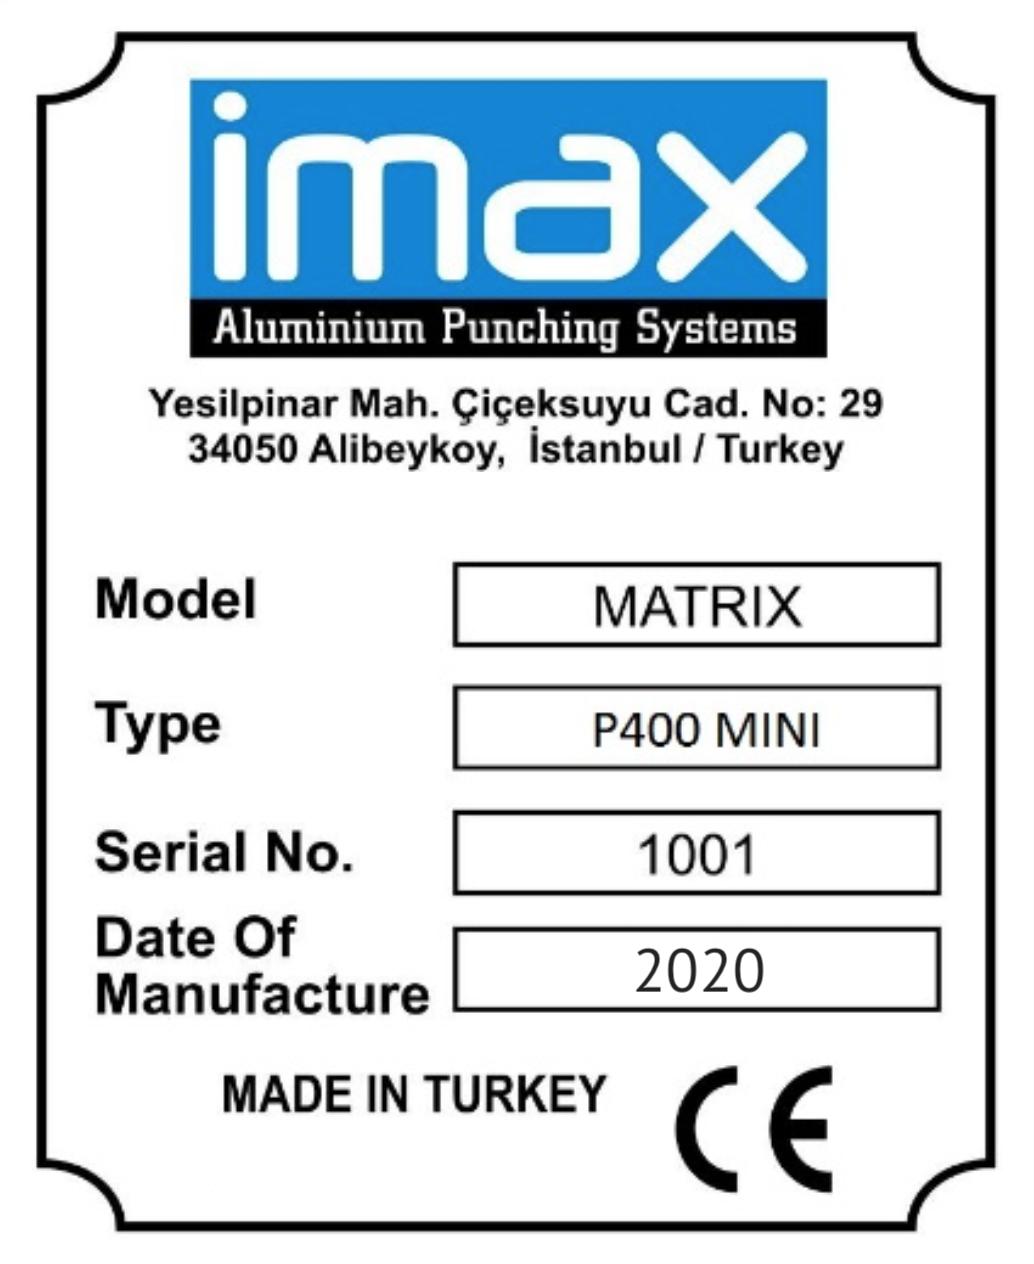 IMAX PROVEDAL Р400 MINI Вырубной пресс по алюминию — оборудование для распашных конструкций профильной системы Provedal (без пробивки каналов для отвода воды) (Новое оборудование)